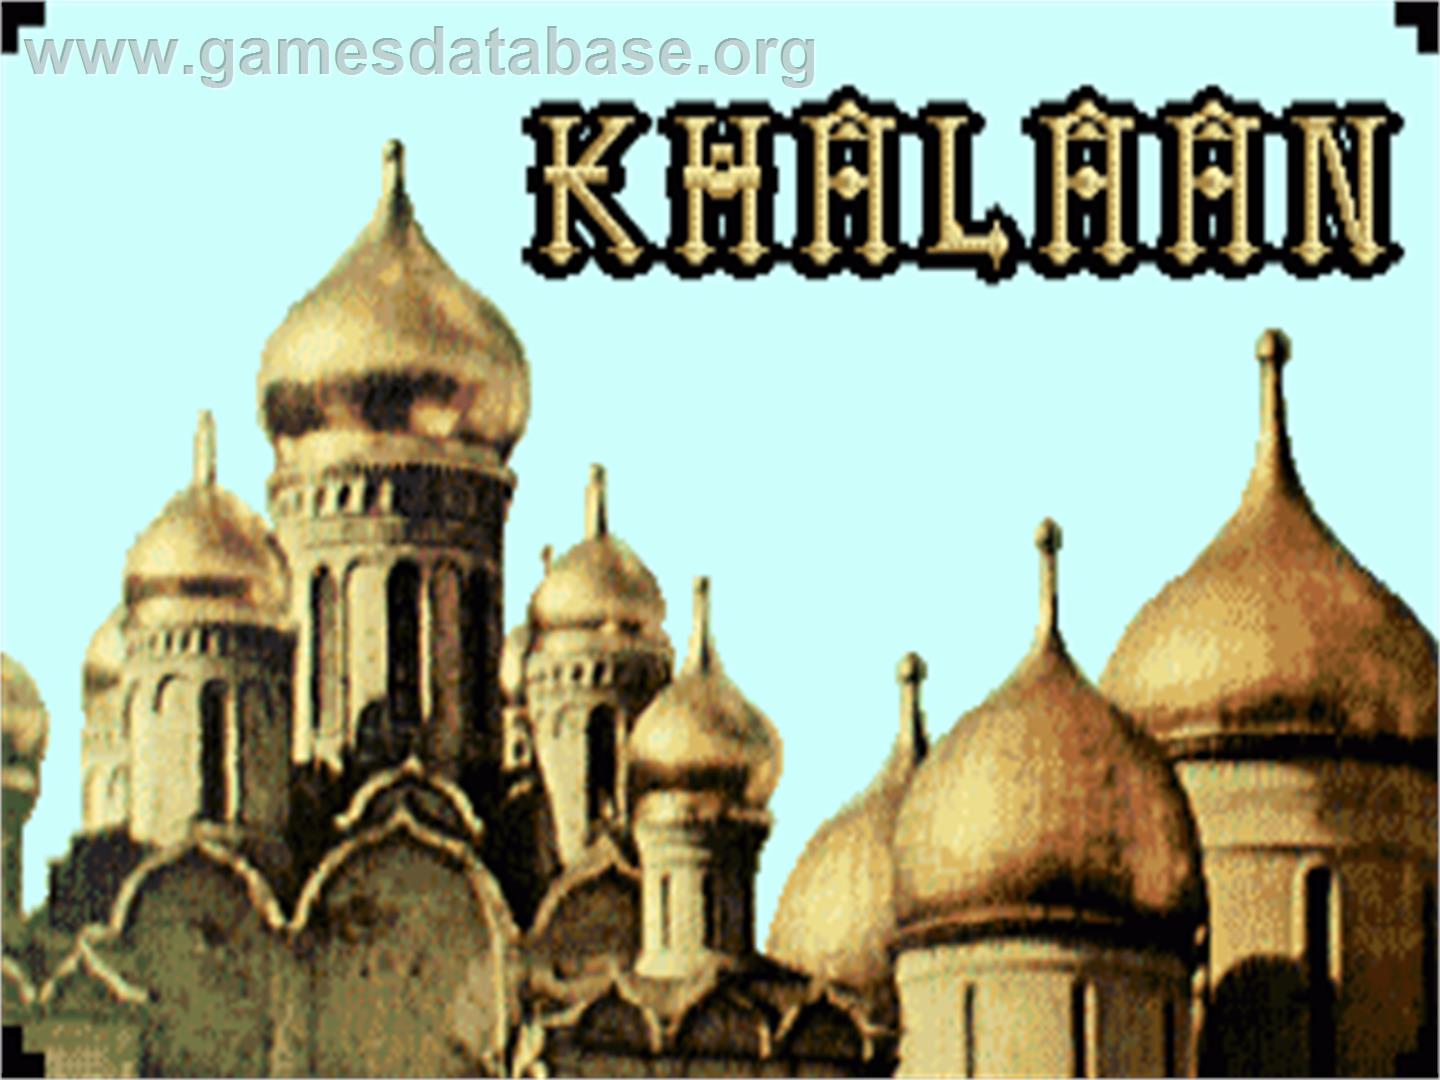 Khalaan - Commodore Amiga - Artwork - Title Screen